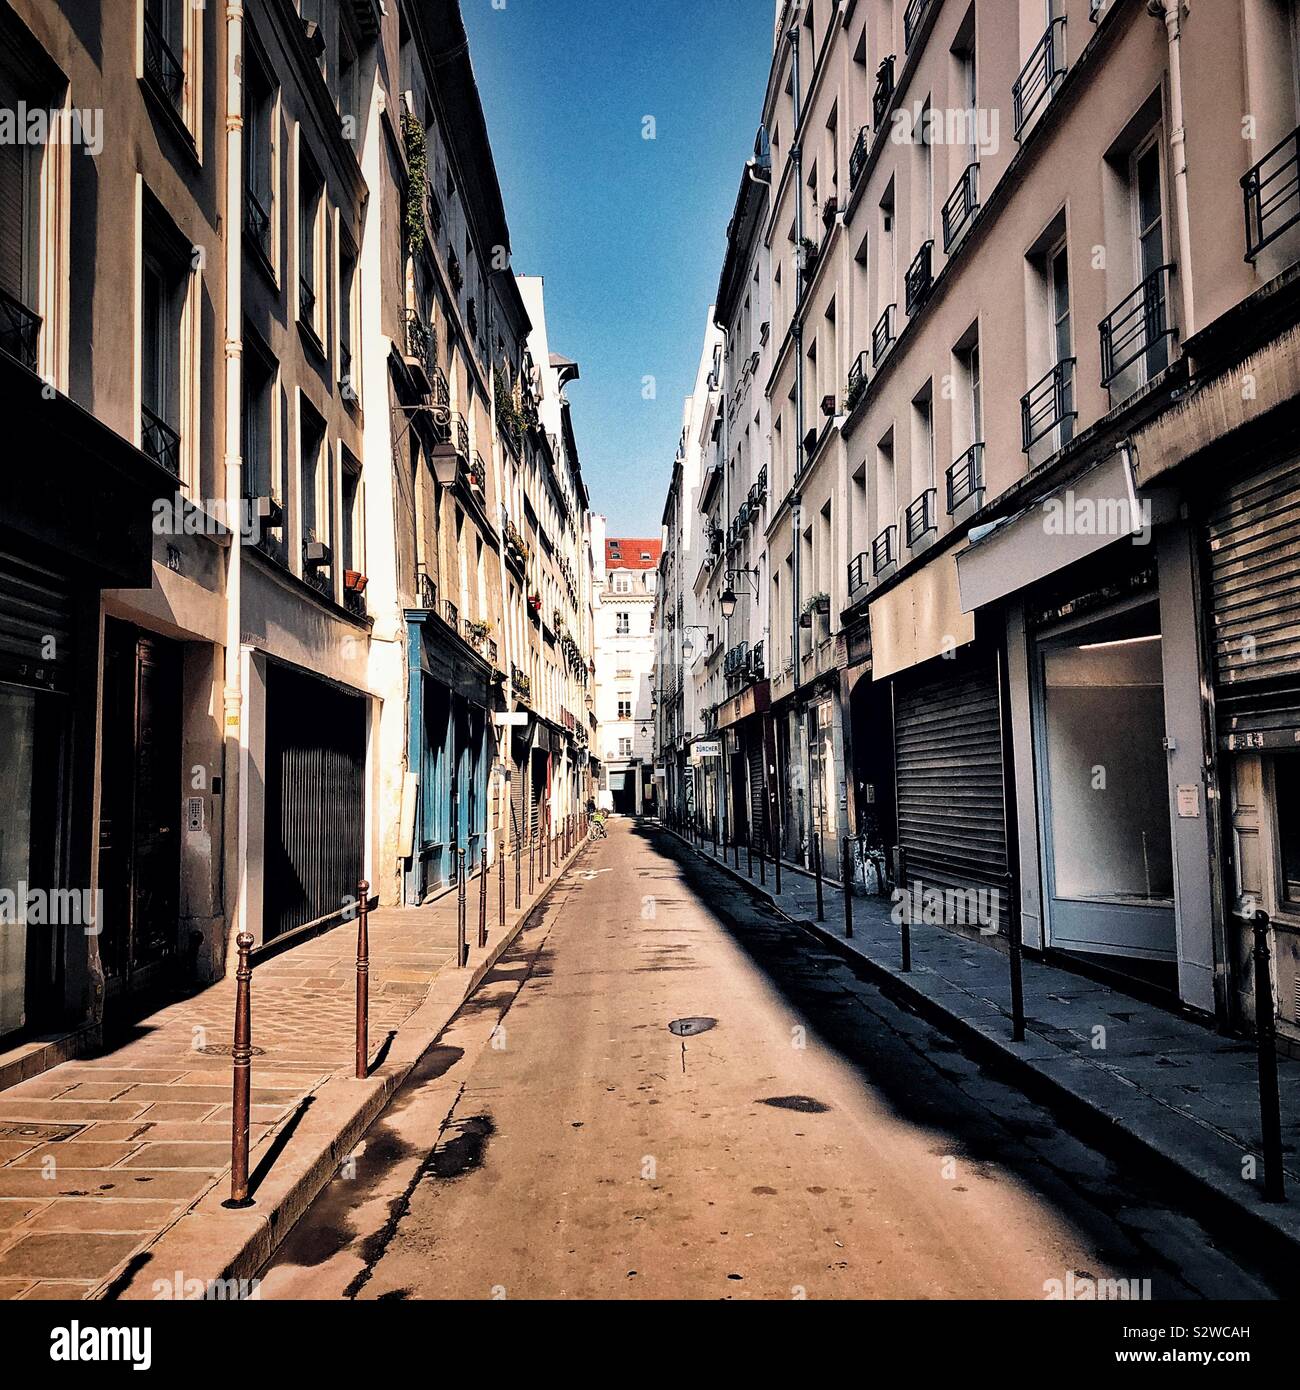 Sunny day on Paris street in Marais neighborhood Stock Photo